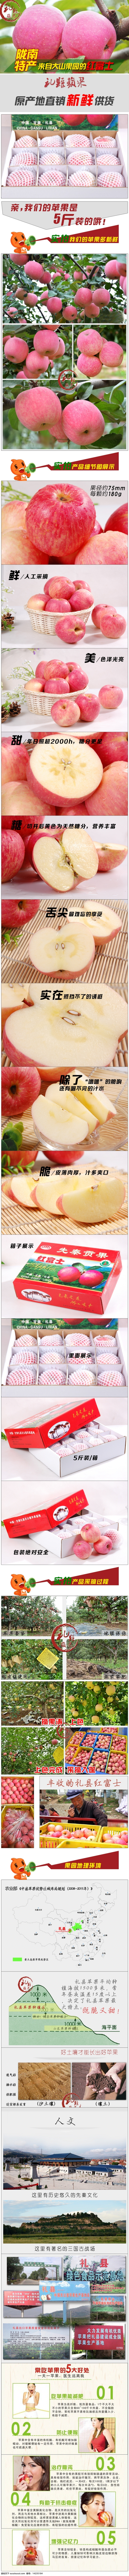 山东 礼县 红富士 苹果 水果 描述 图 新鲜苹果 烟台红富士 水果苹果 白色